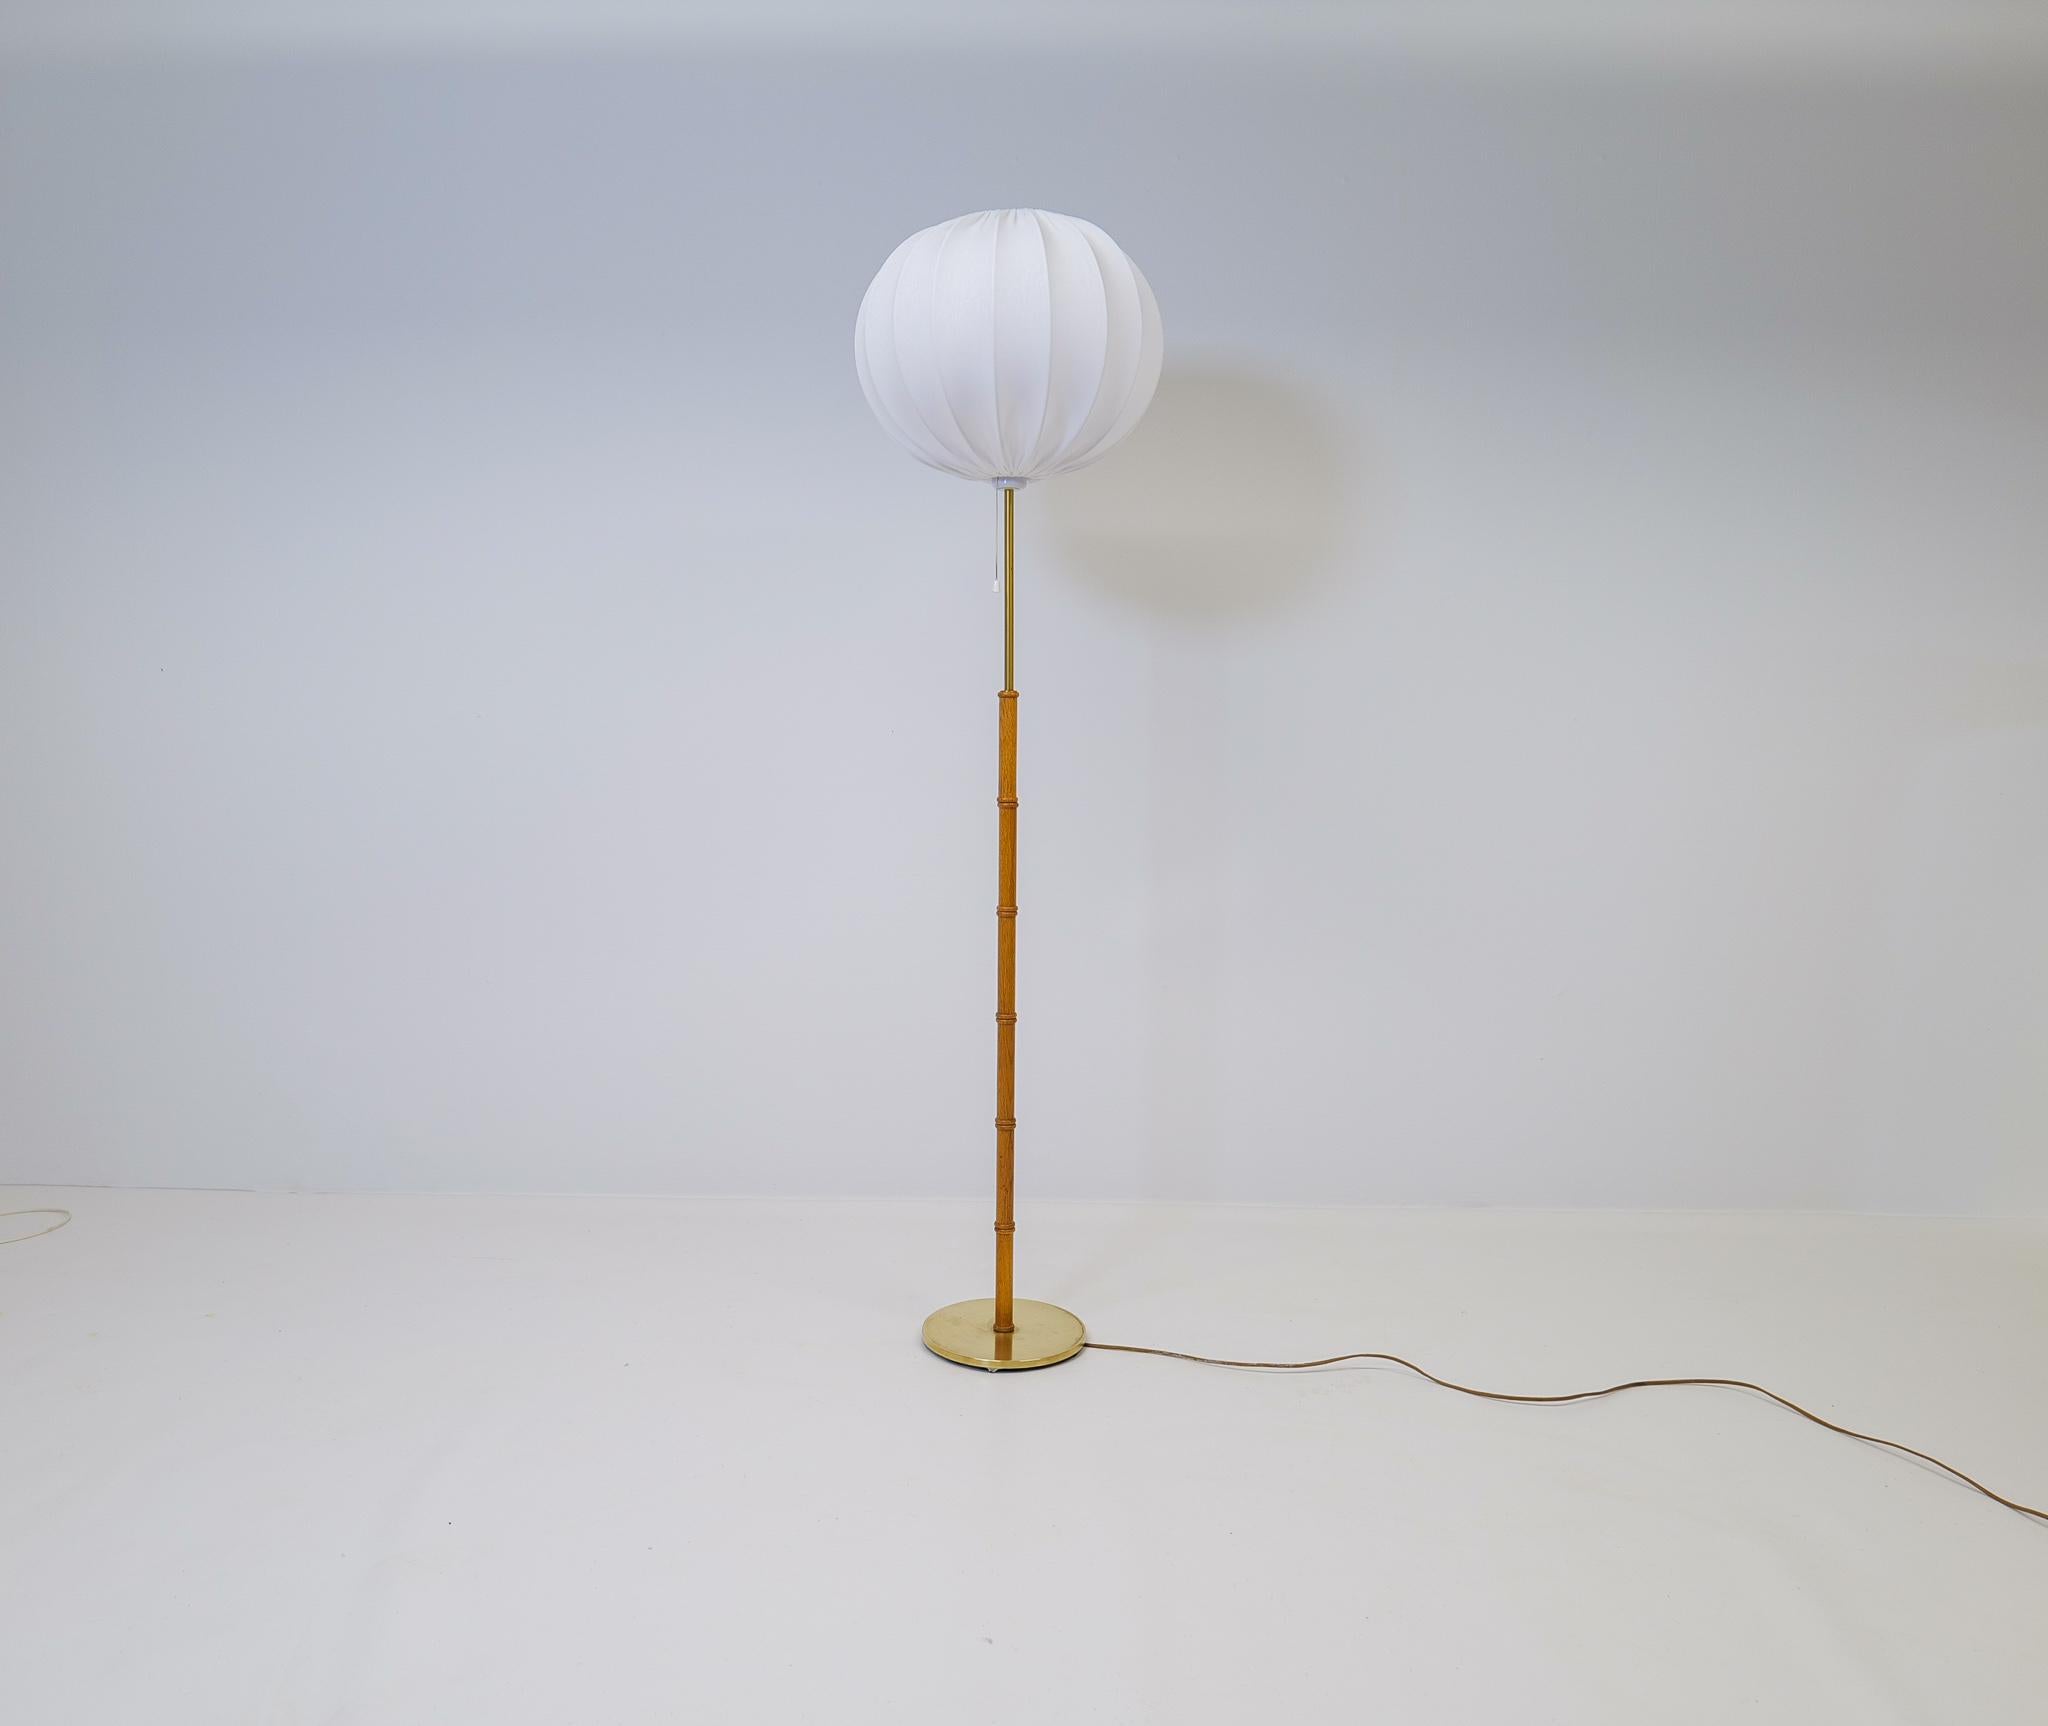 Cette lampe a été fabriquée en Suède chez Falkenbergs Belysning. La combinaison du laiton et du chêne fait de cette lampe une belle pièce de design suédois. Abat-jour rond de nouvelle qualité fabriqué en Suède.

Bon état de fonctionnement avec